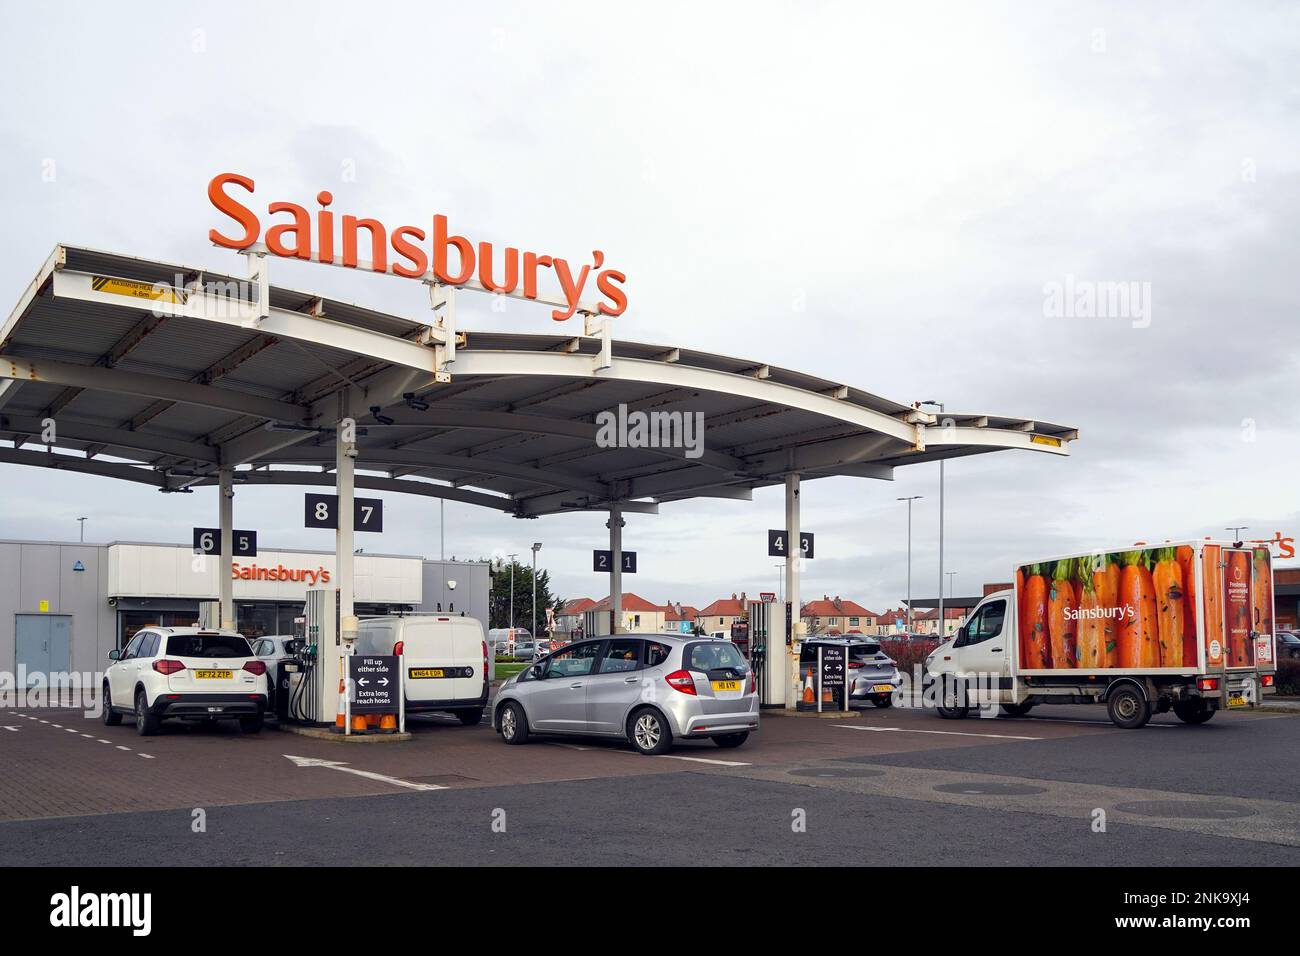 Sainsbury's Tankstelle neben einem sainsbury's Supermarkt, Prestwick, Schottland, Großbritannien Stockfoto